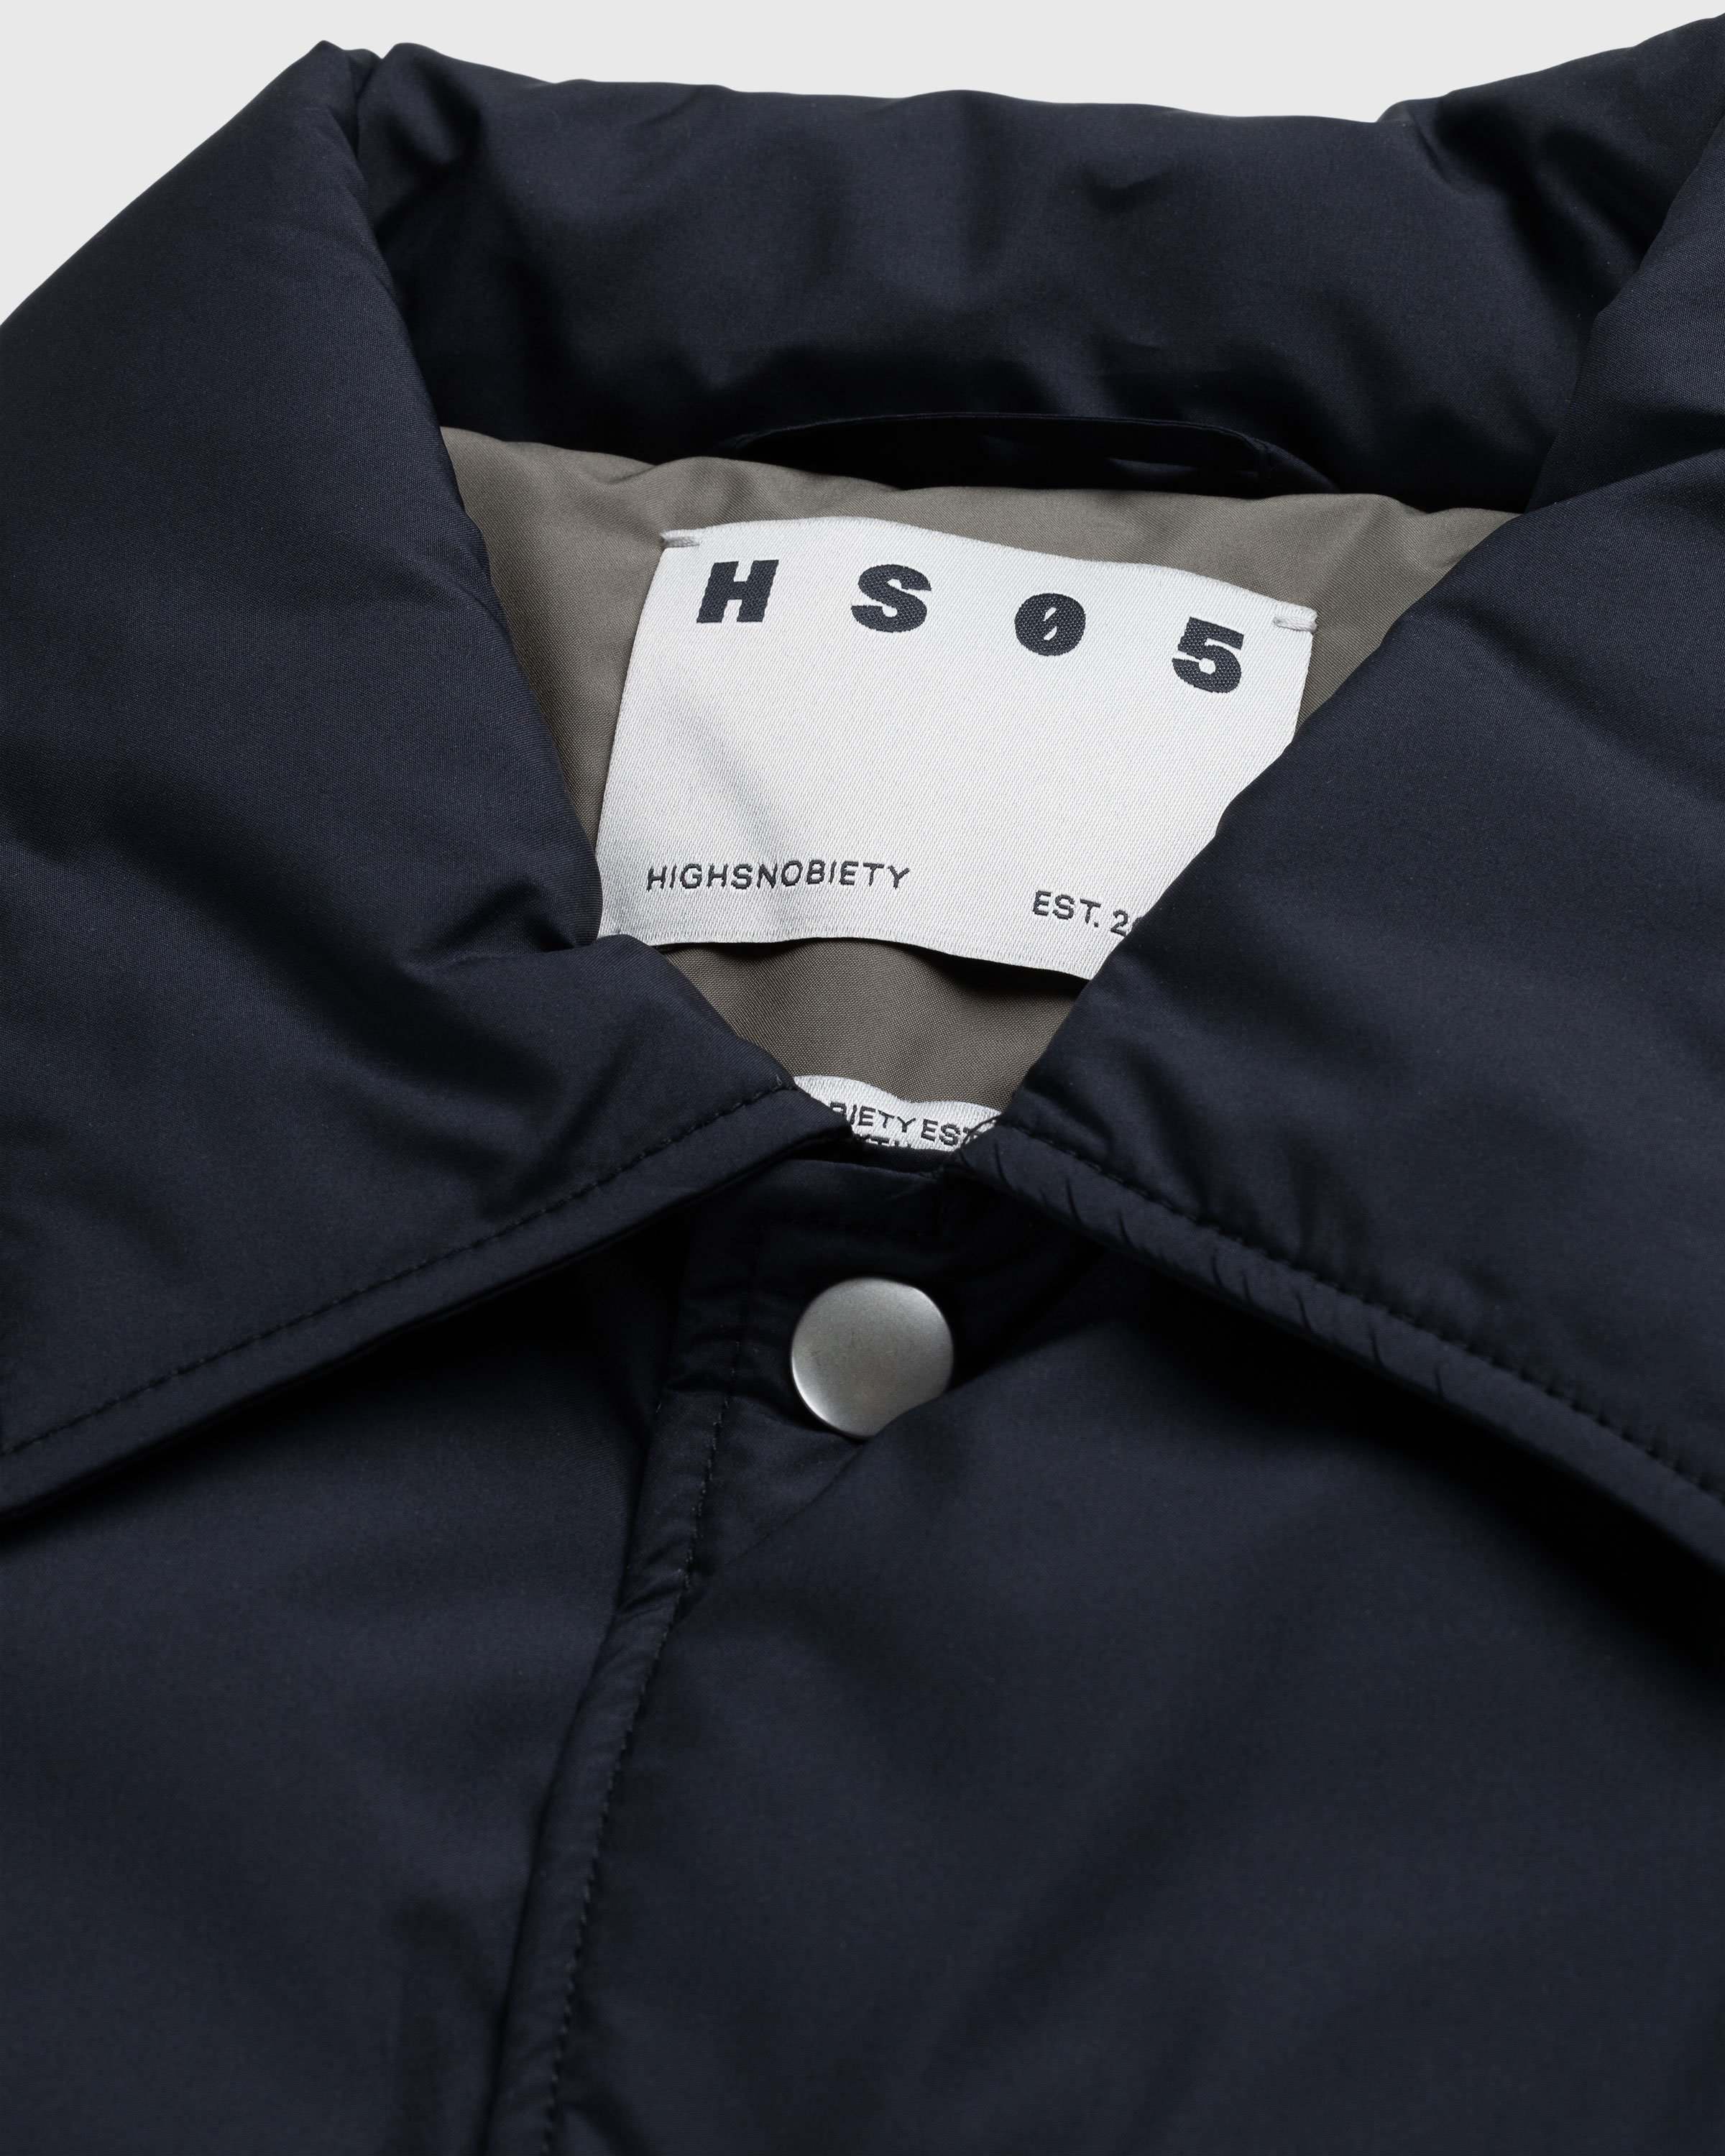 Highsnobiety HS05 - Light Insulated Eco-Poly Jacket Black - Clothing - Black - Image 3